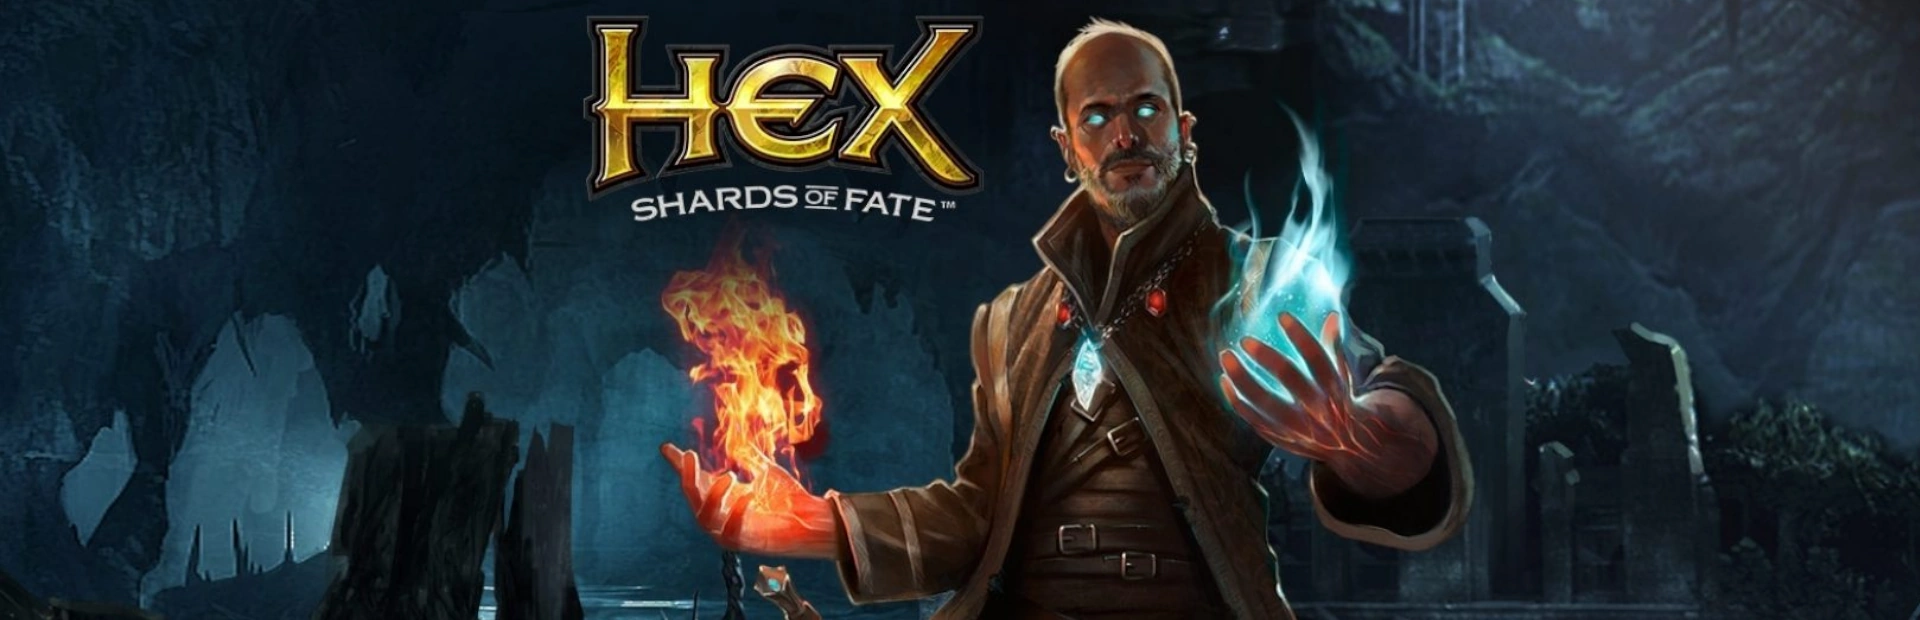 دانلود بازی HEX: Shards of Fate برای کامپیوتر | گیمباتو